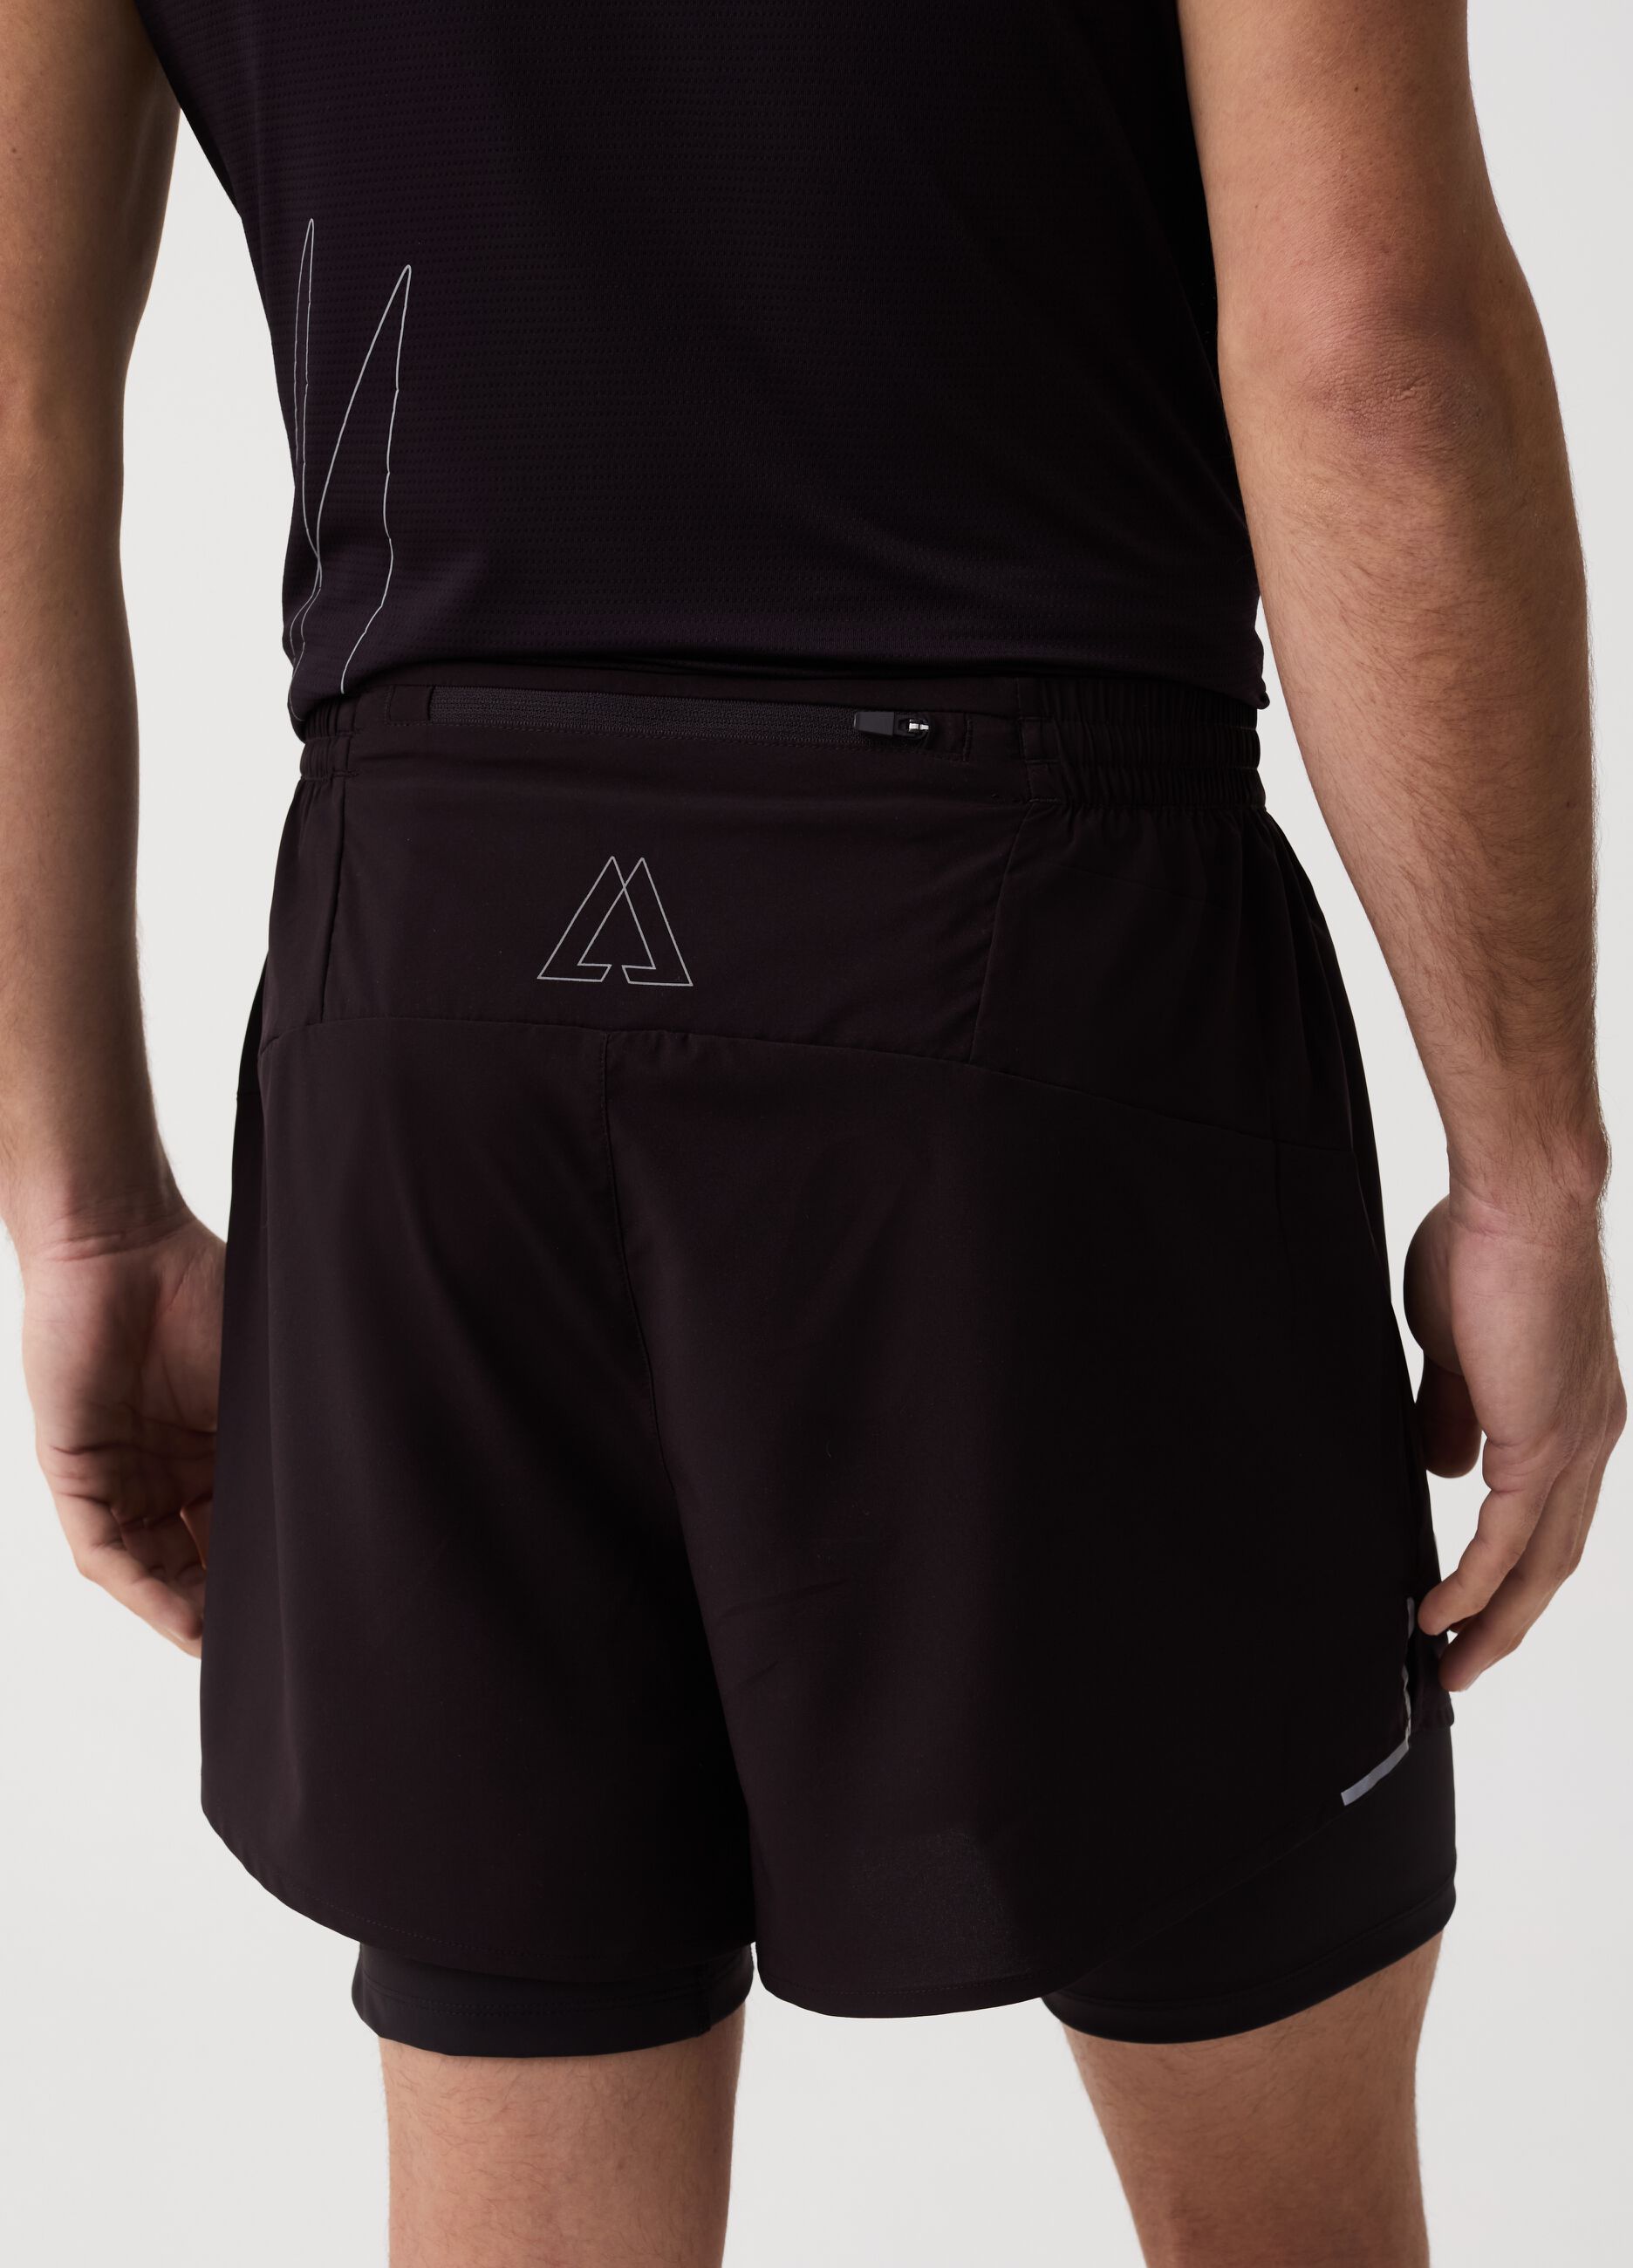 Altavia running shorts